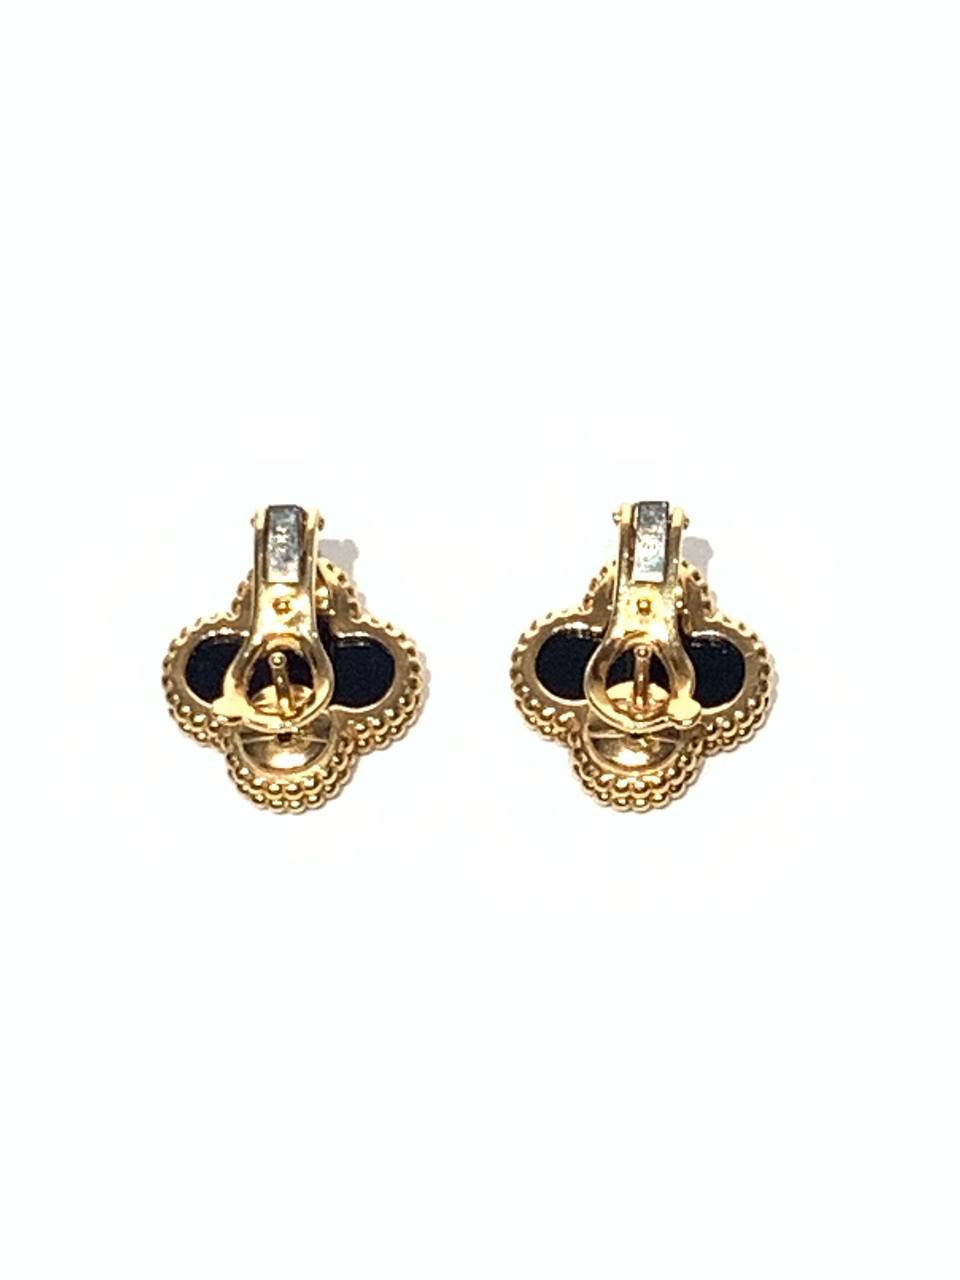 VAN CLEEF & ARPELS Vintage Alhambra Black Onyx Yellow Gold Earrings